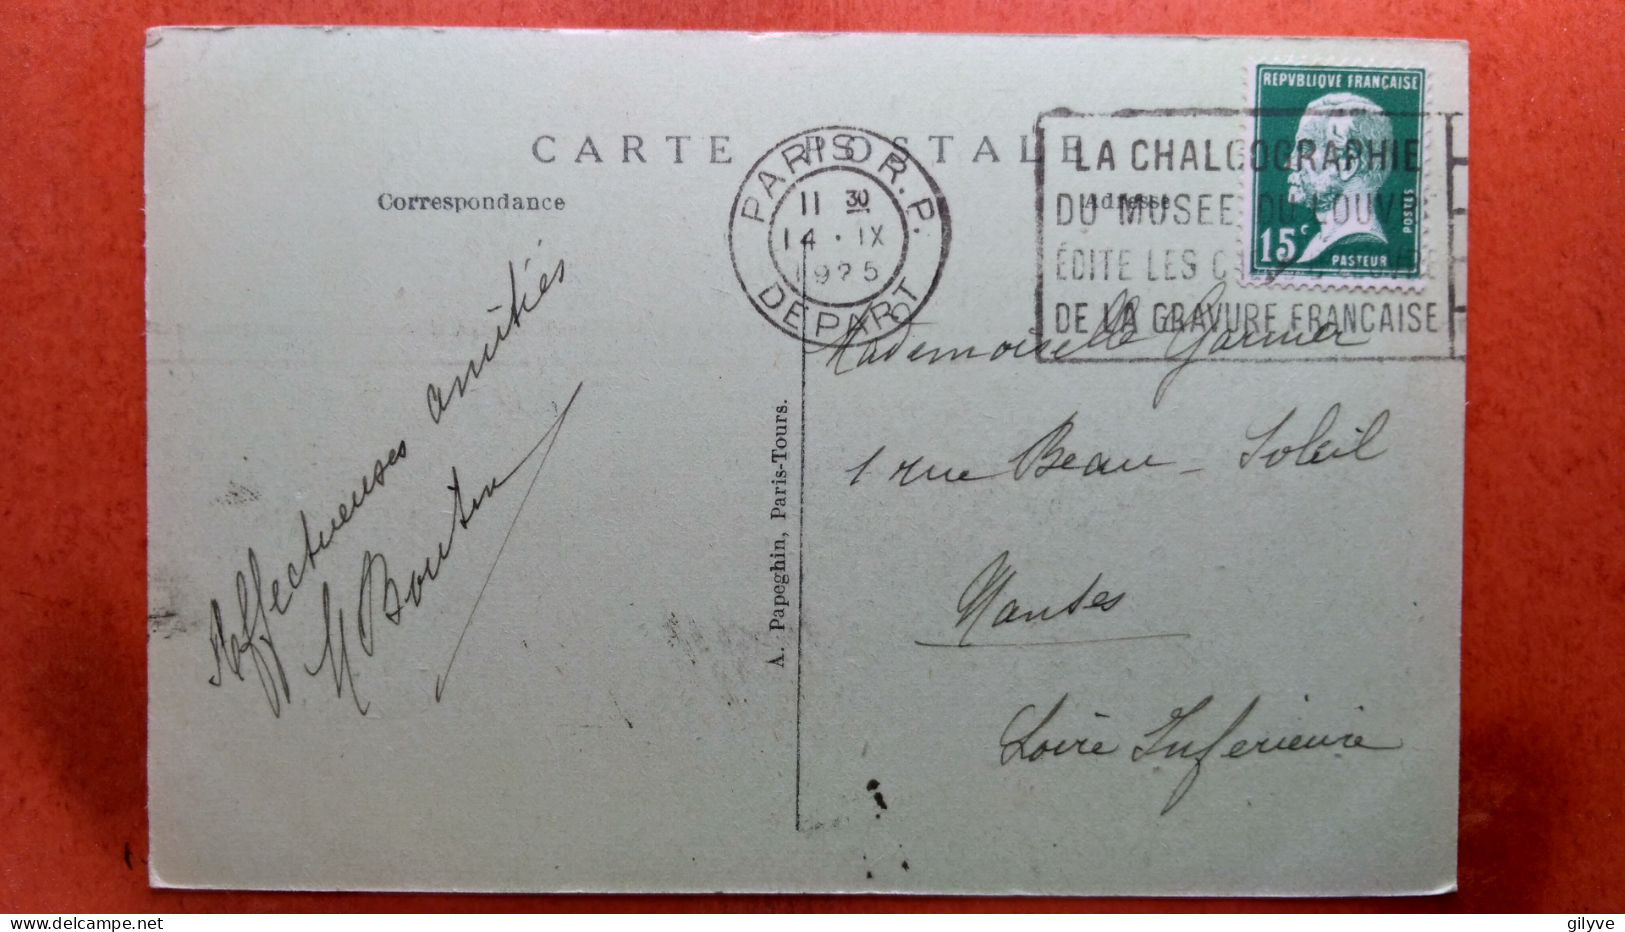 CPA (75) Paris.1925. Exposition Des Arts Décoratifs. Pavillon De L'Asie Française..(7A.1200) - Expositions